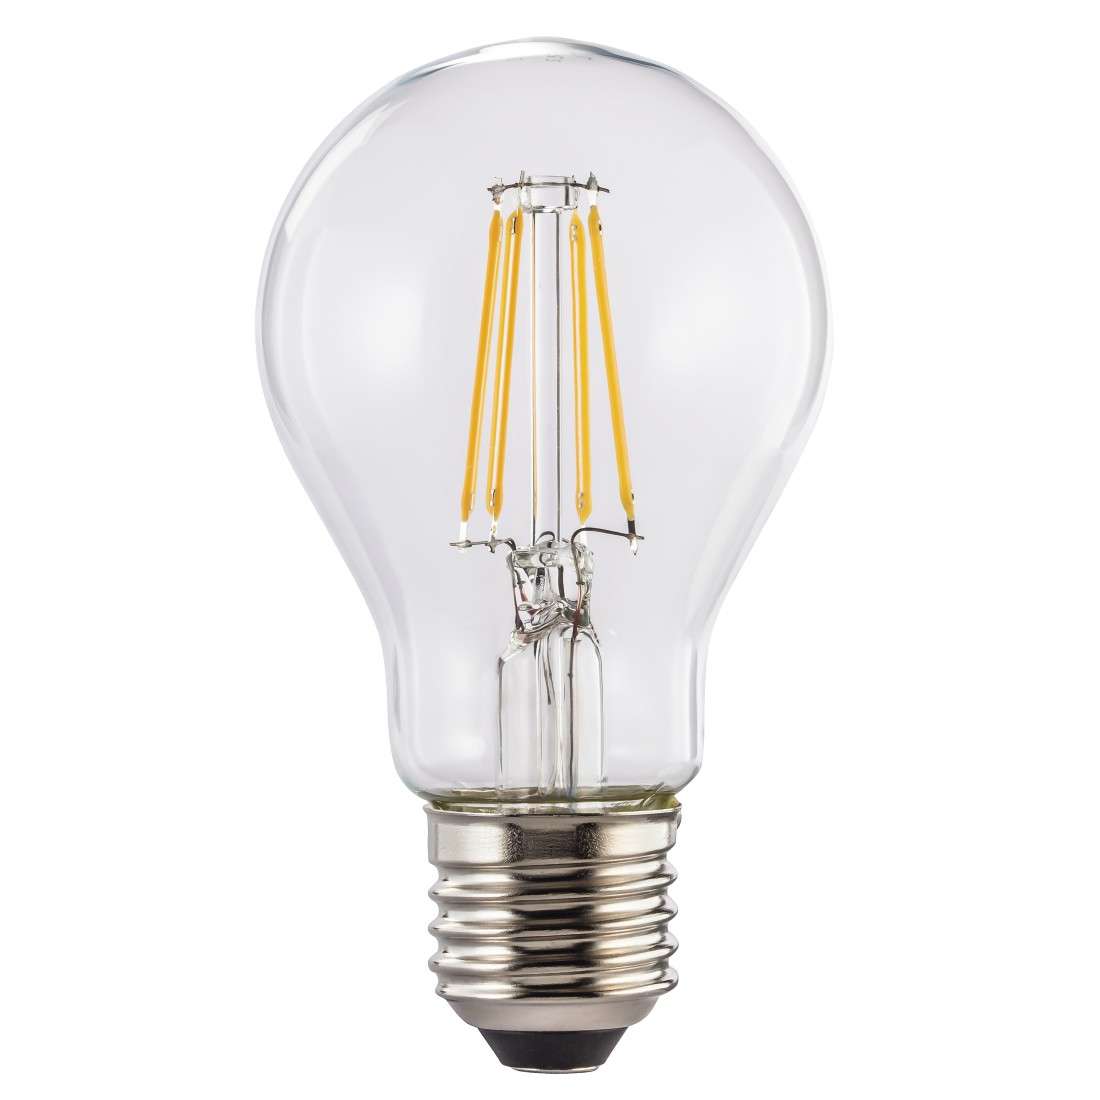 LED-Filament, E27, 806lm ersetzt 60W, Glühlampe, Warmweiß, klar, dimmbar